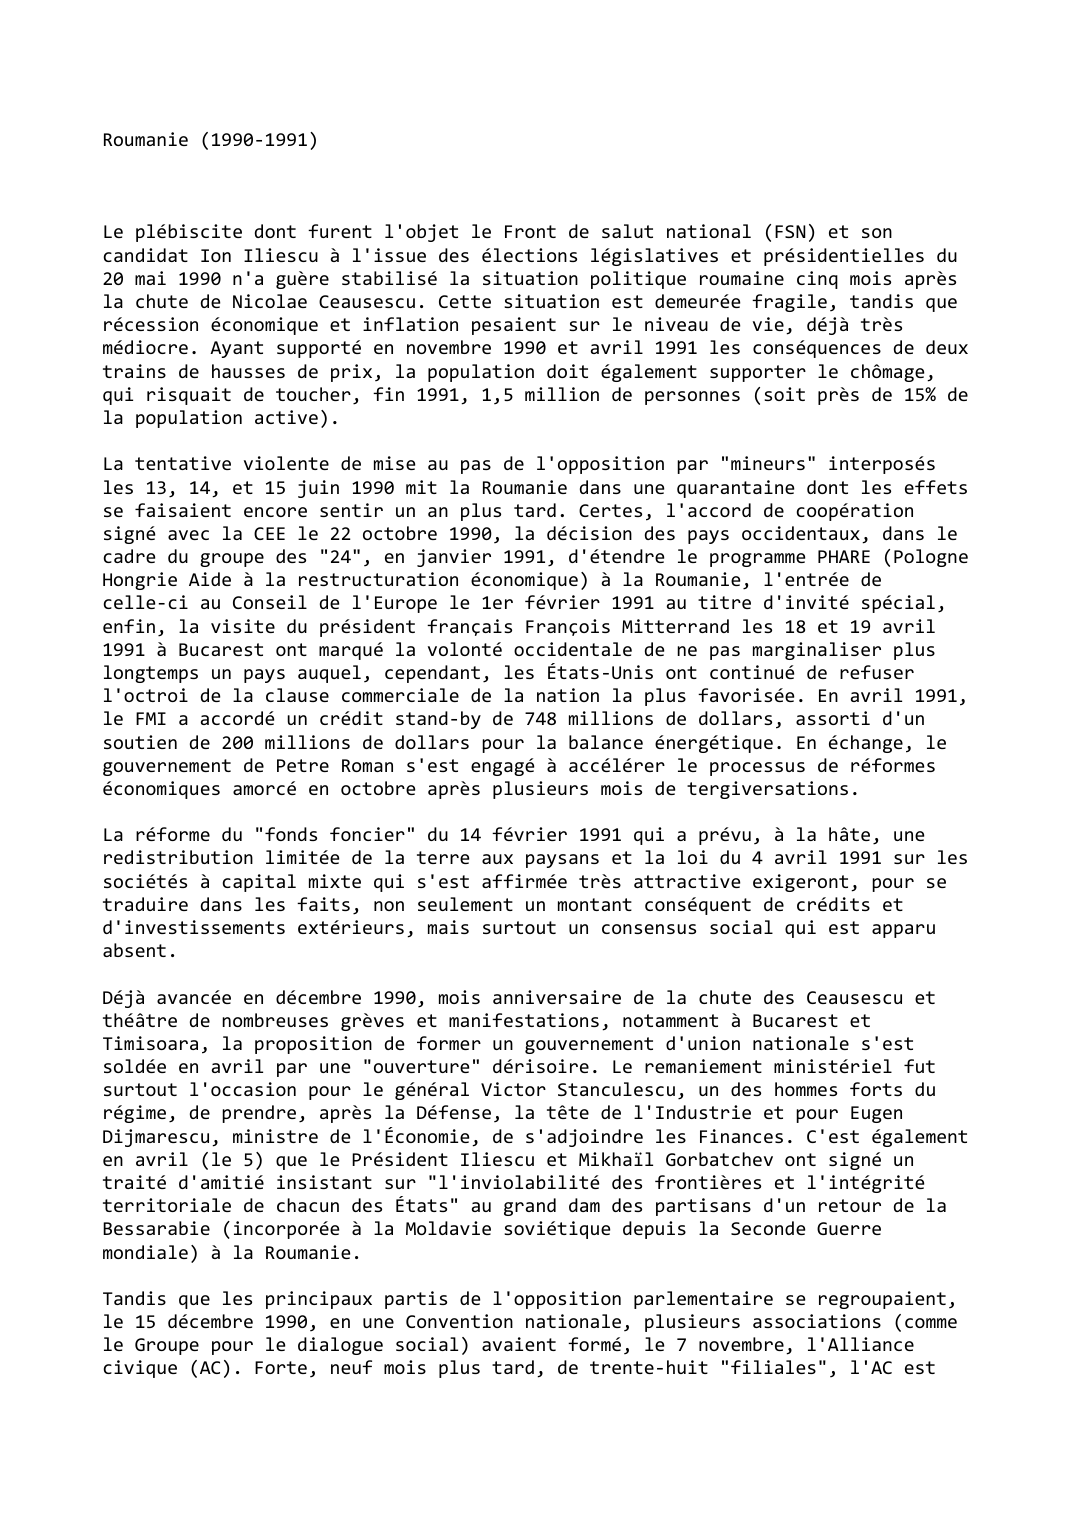 Prévisualisation du document Roumanie (1990-1991)